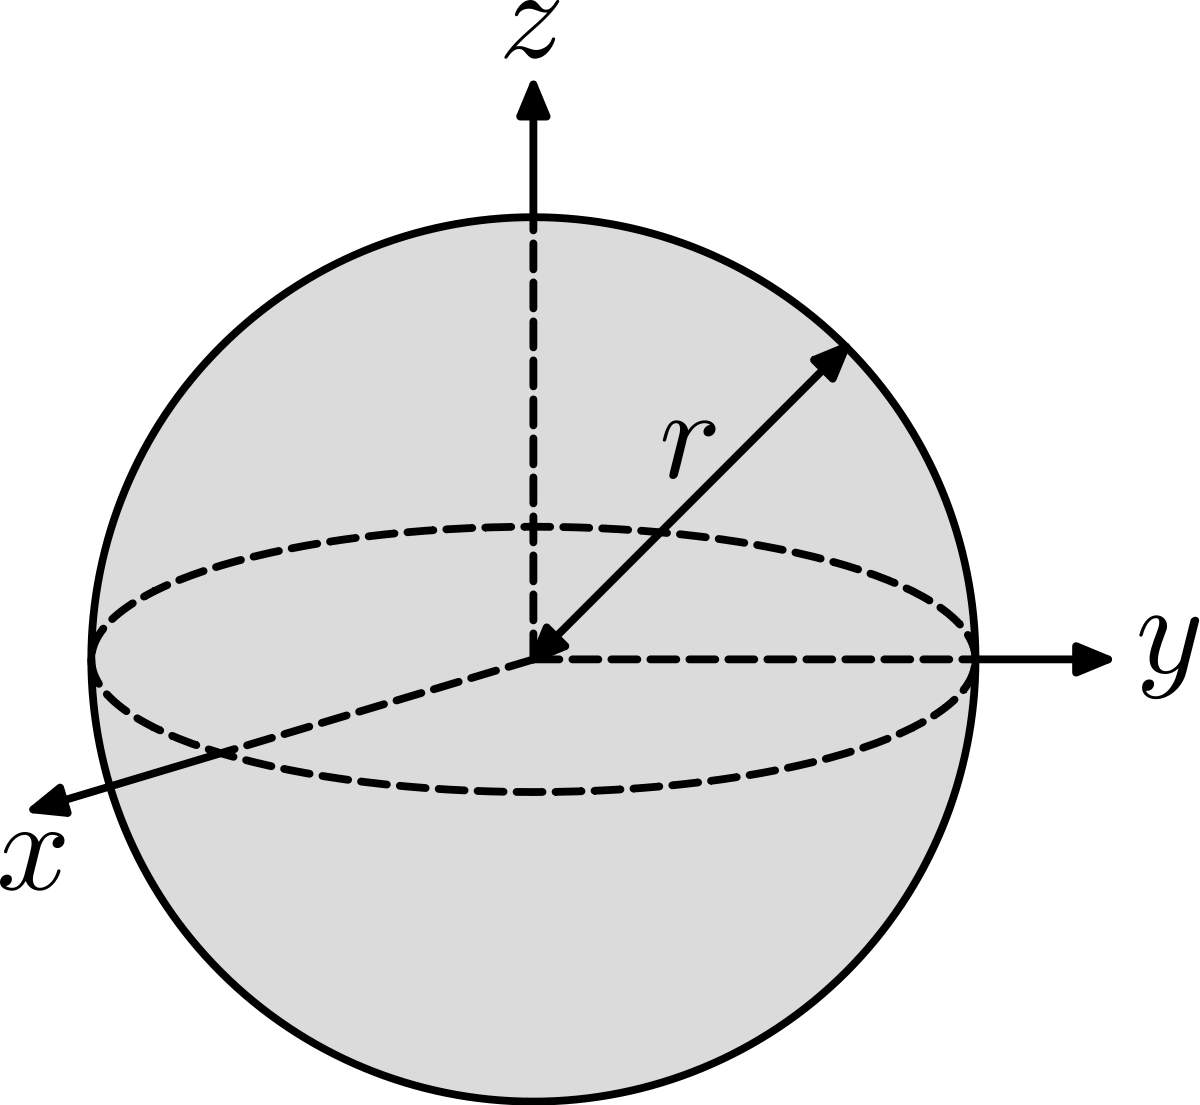 4 × π × r × r

r = radius
